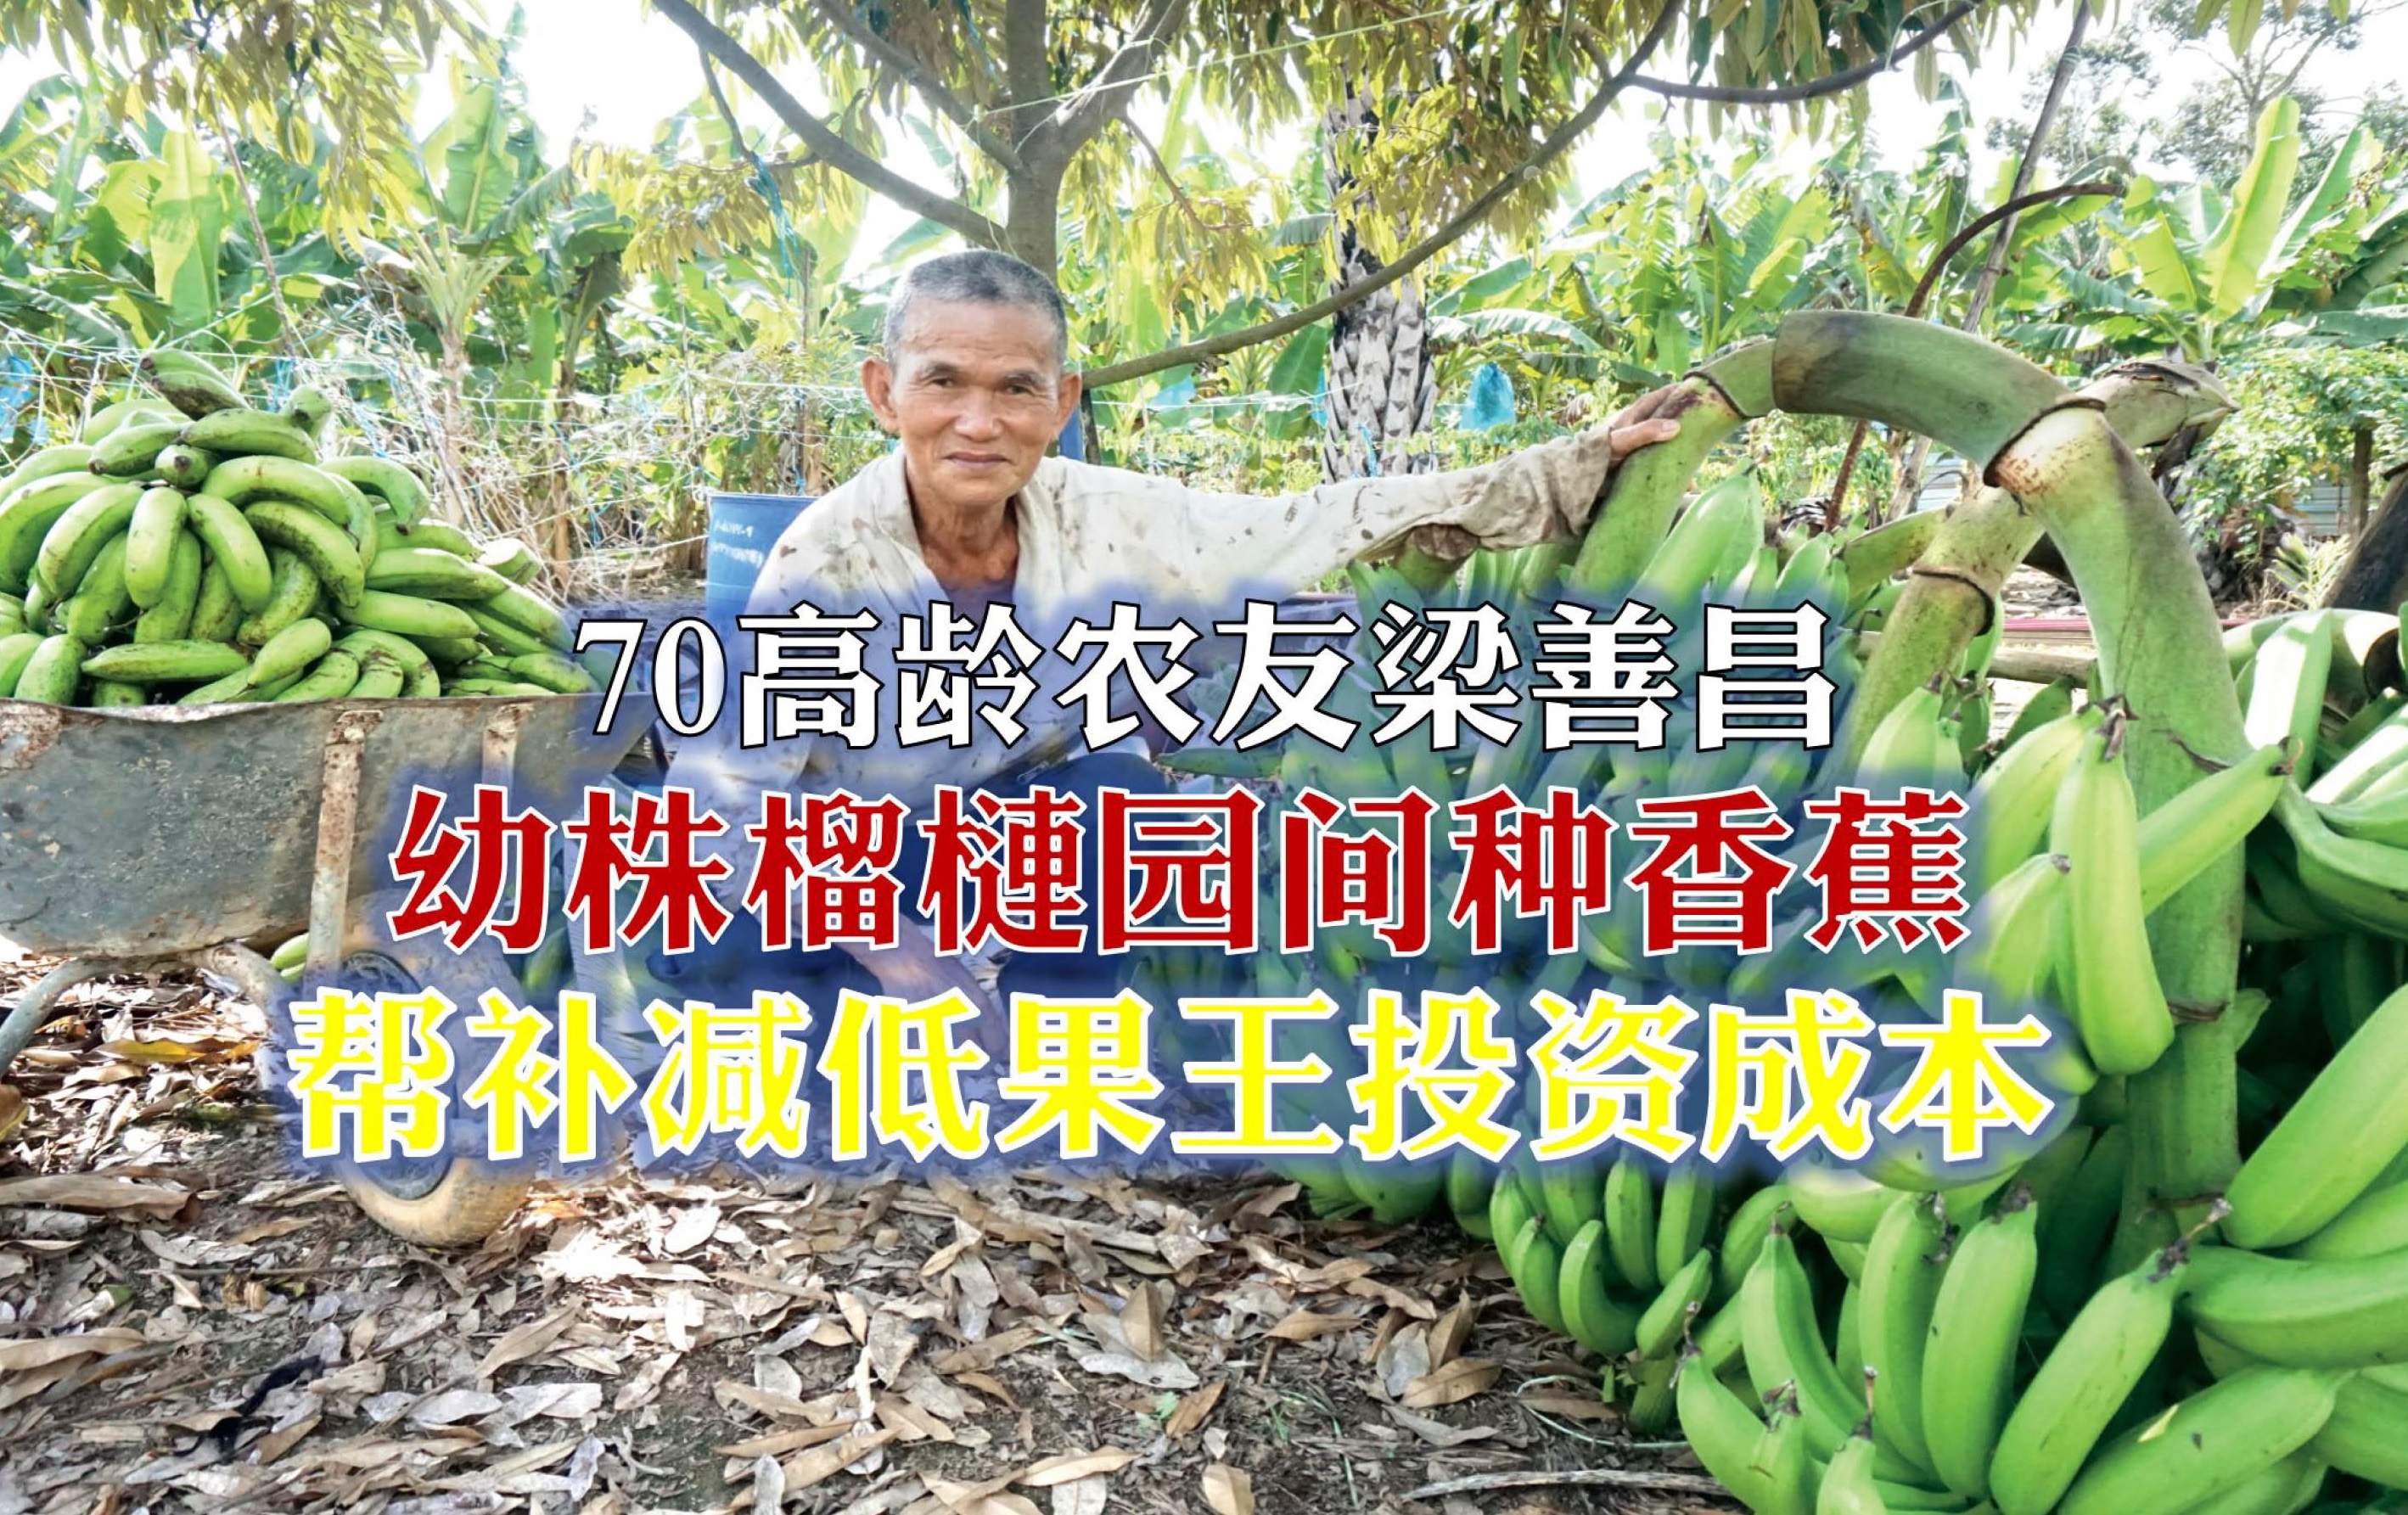 幼株榴梿园间种香蕉 提供帮补减低果王投资成本 - 农牧世界